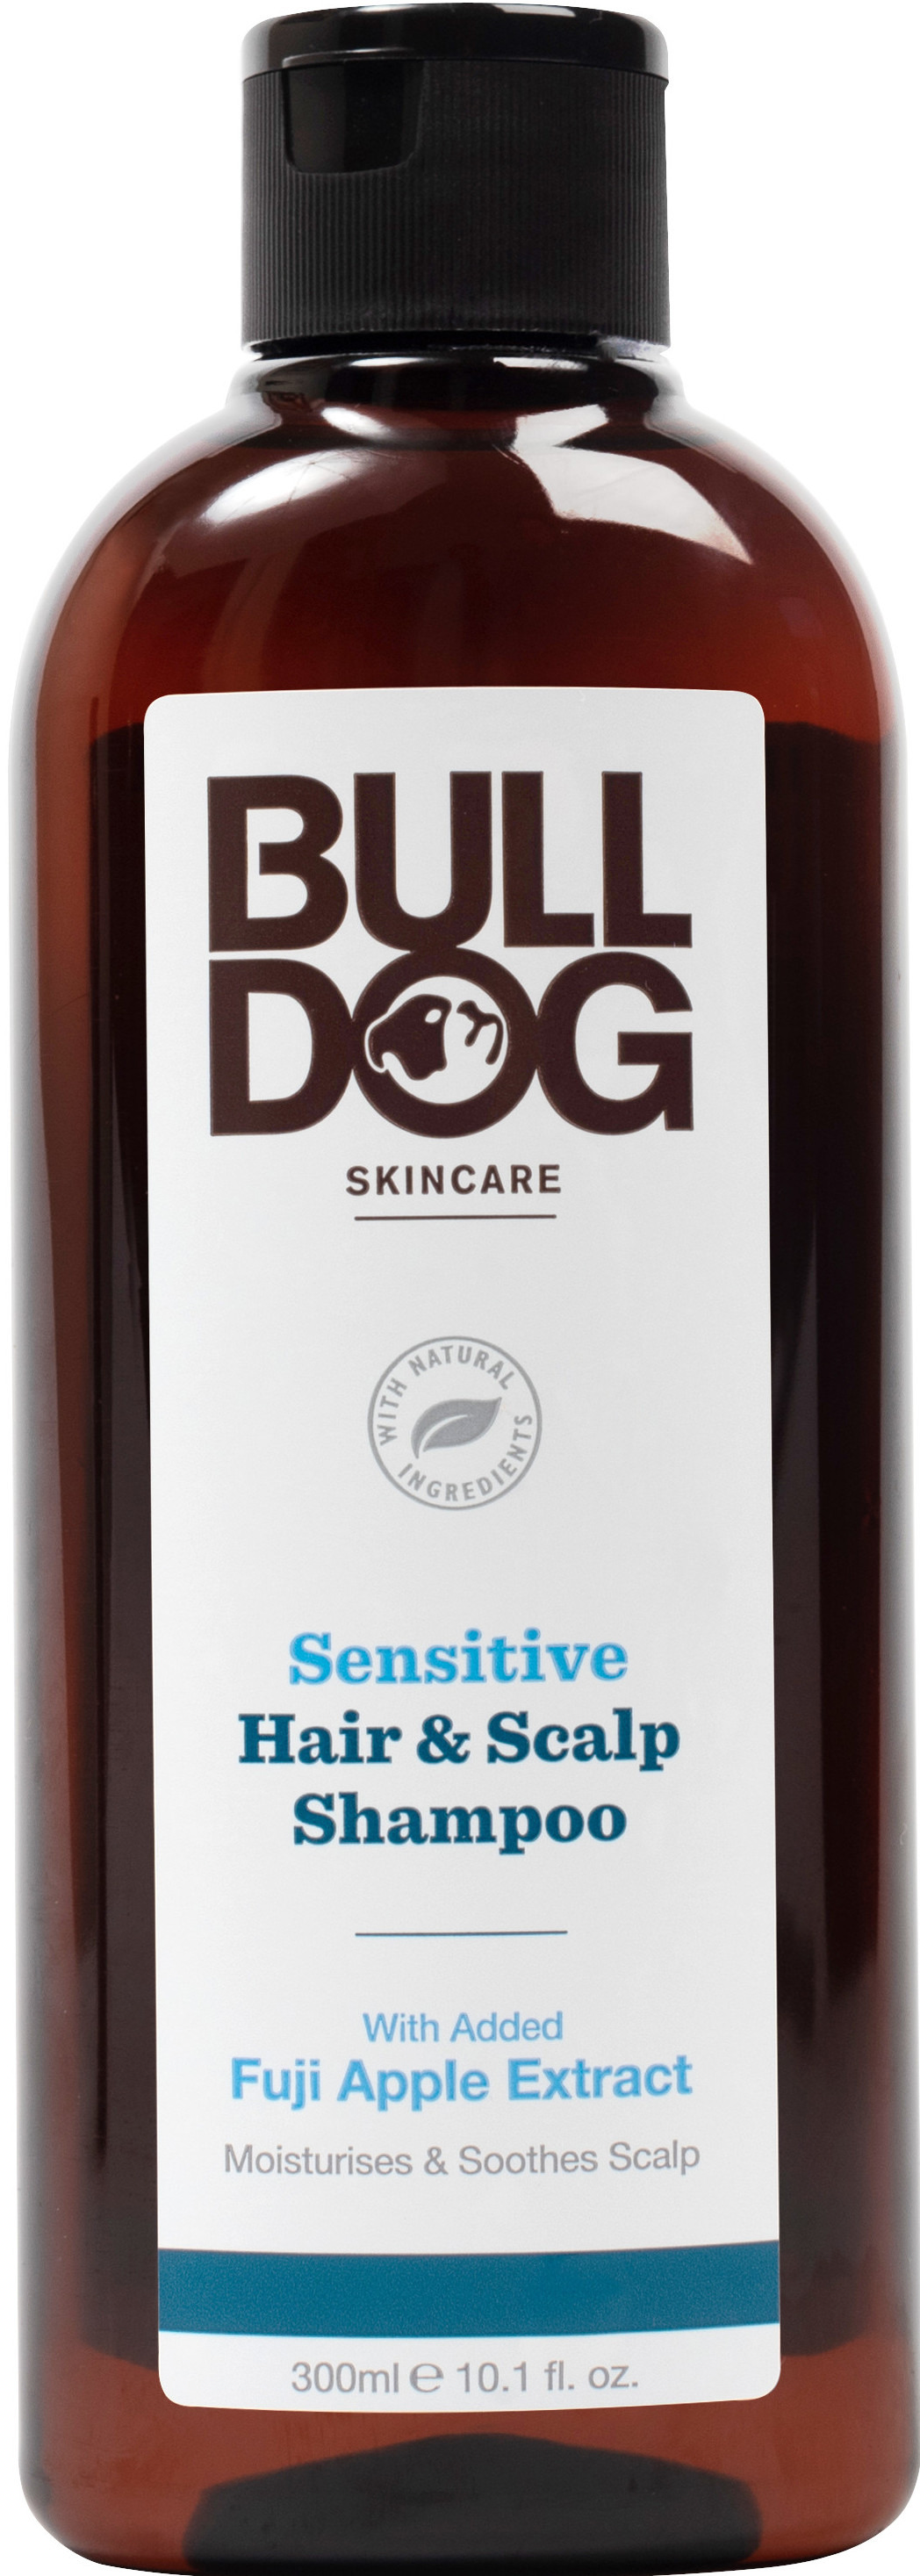 Bulldog Sensitive Hair & Scalp Shampoo 300 ml